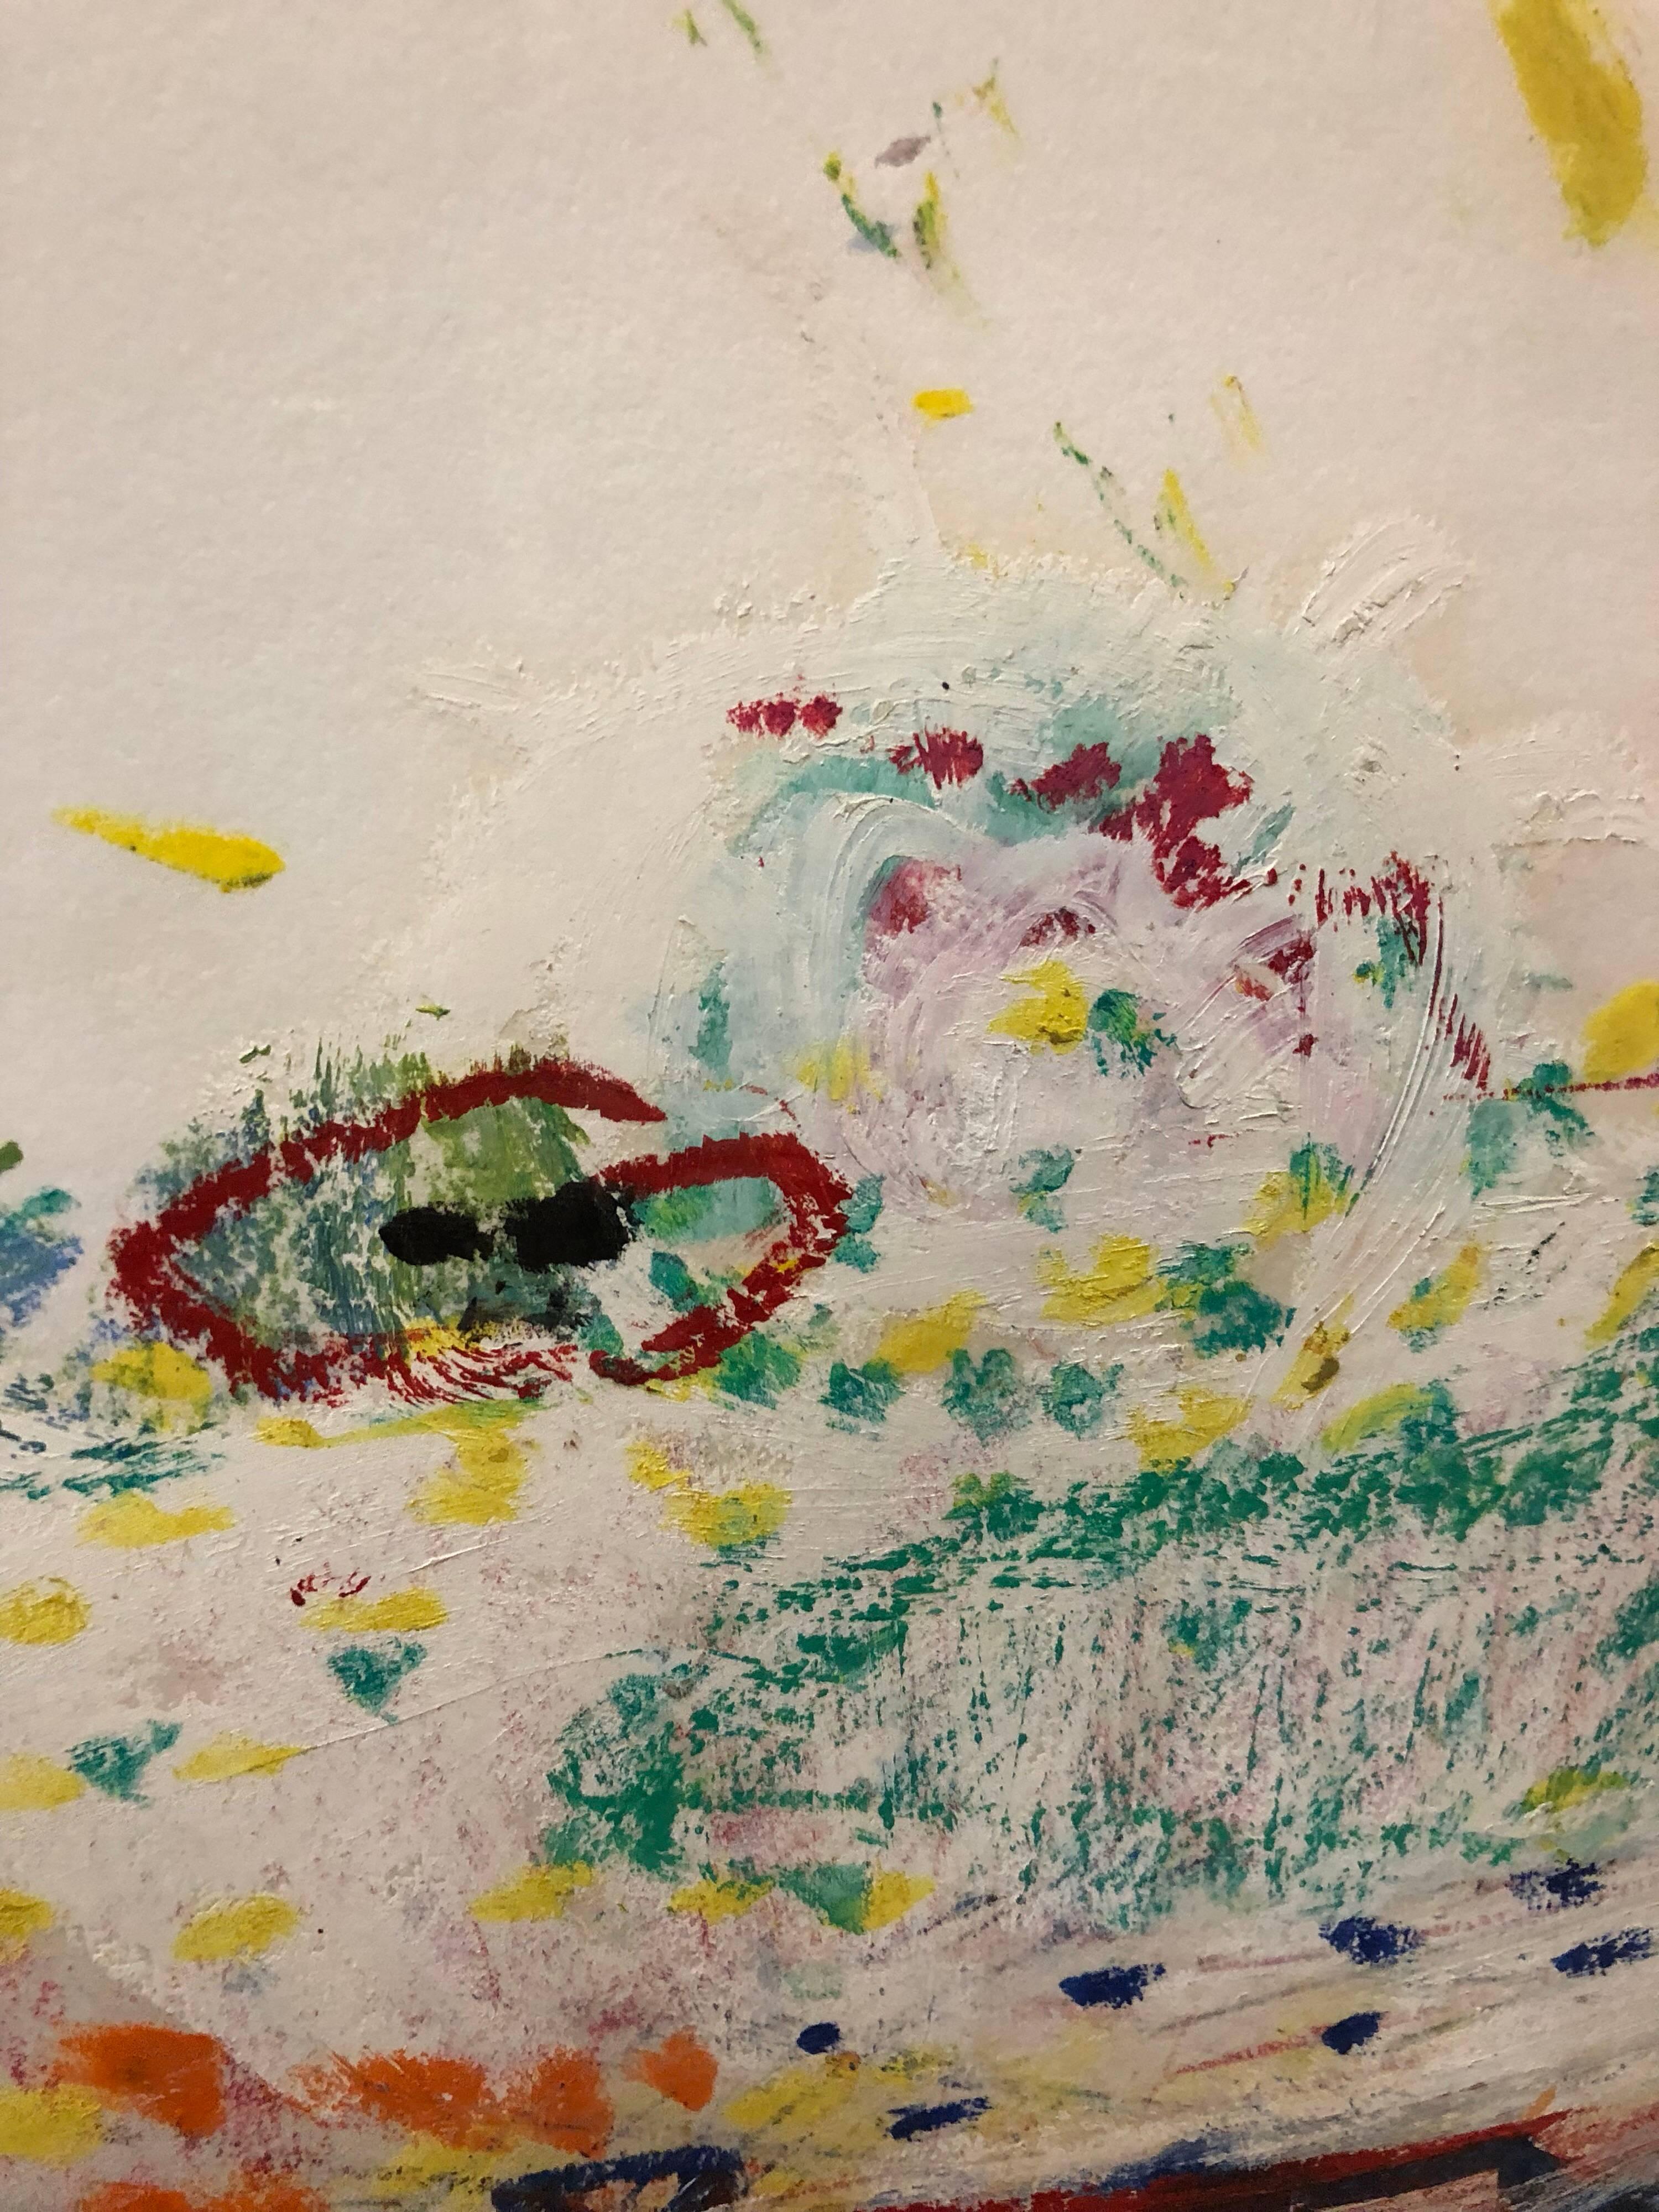 John Evans (américain, né en 1945), Untitled oilstick on paper, signé au crayon en bas au centre, étiquette de la galerie (Allan Stone Gallery, New York) apposée au verso, feuille : le format de vue est  22 